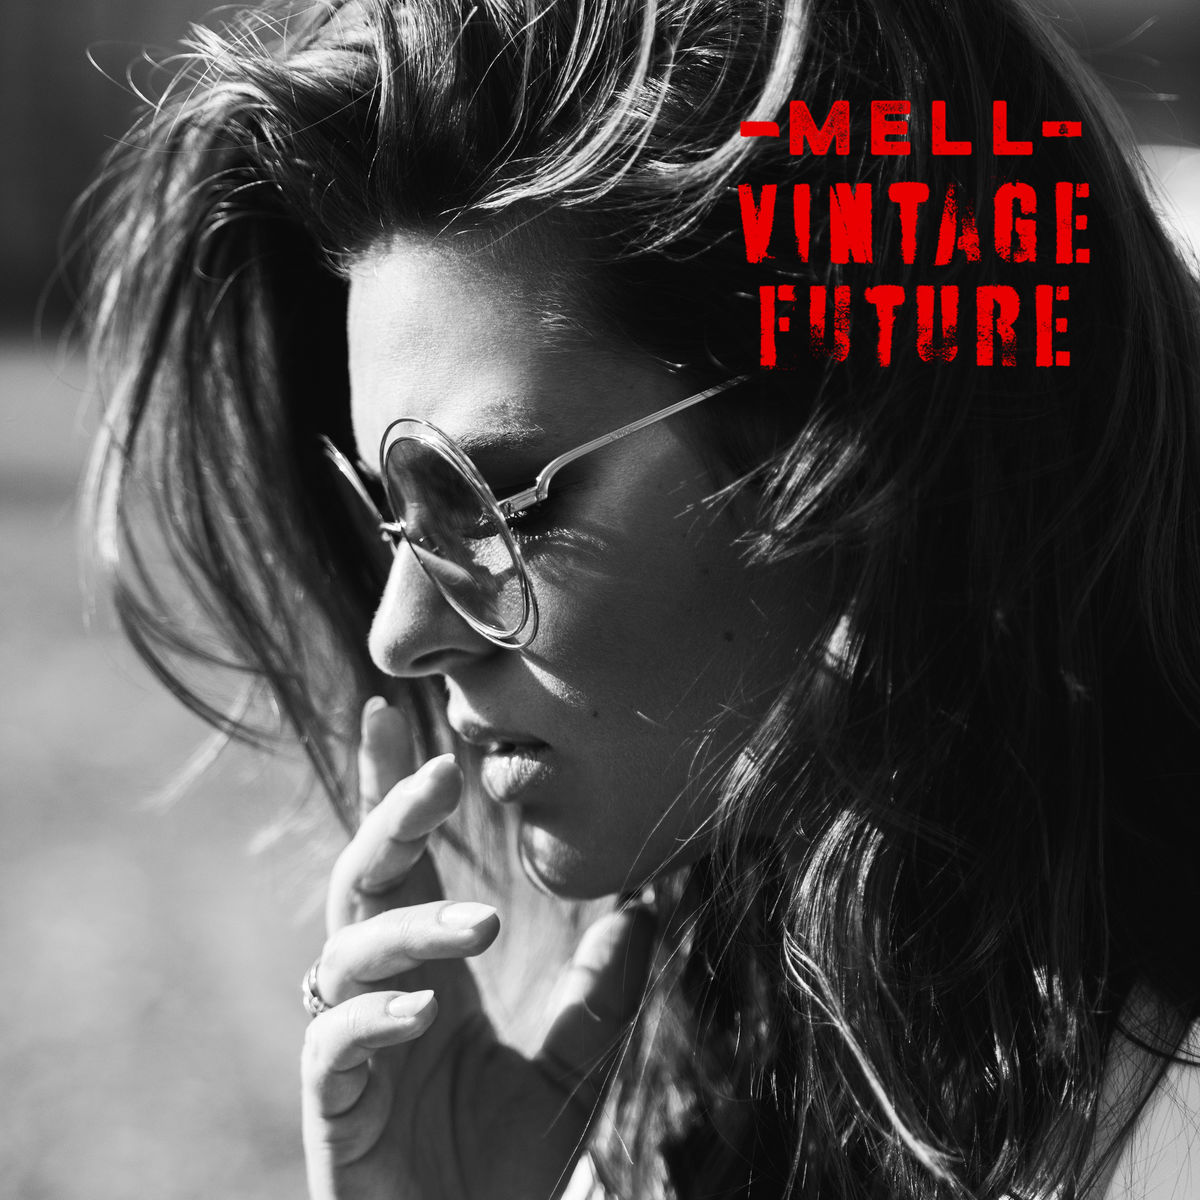 Mell & Vintage Future - (2019) Mell & Vintage Future